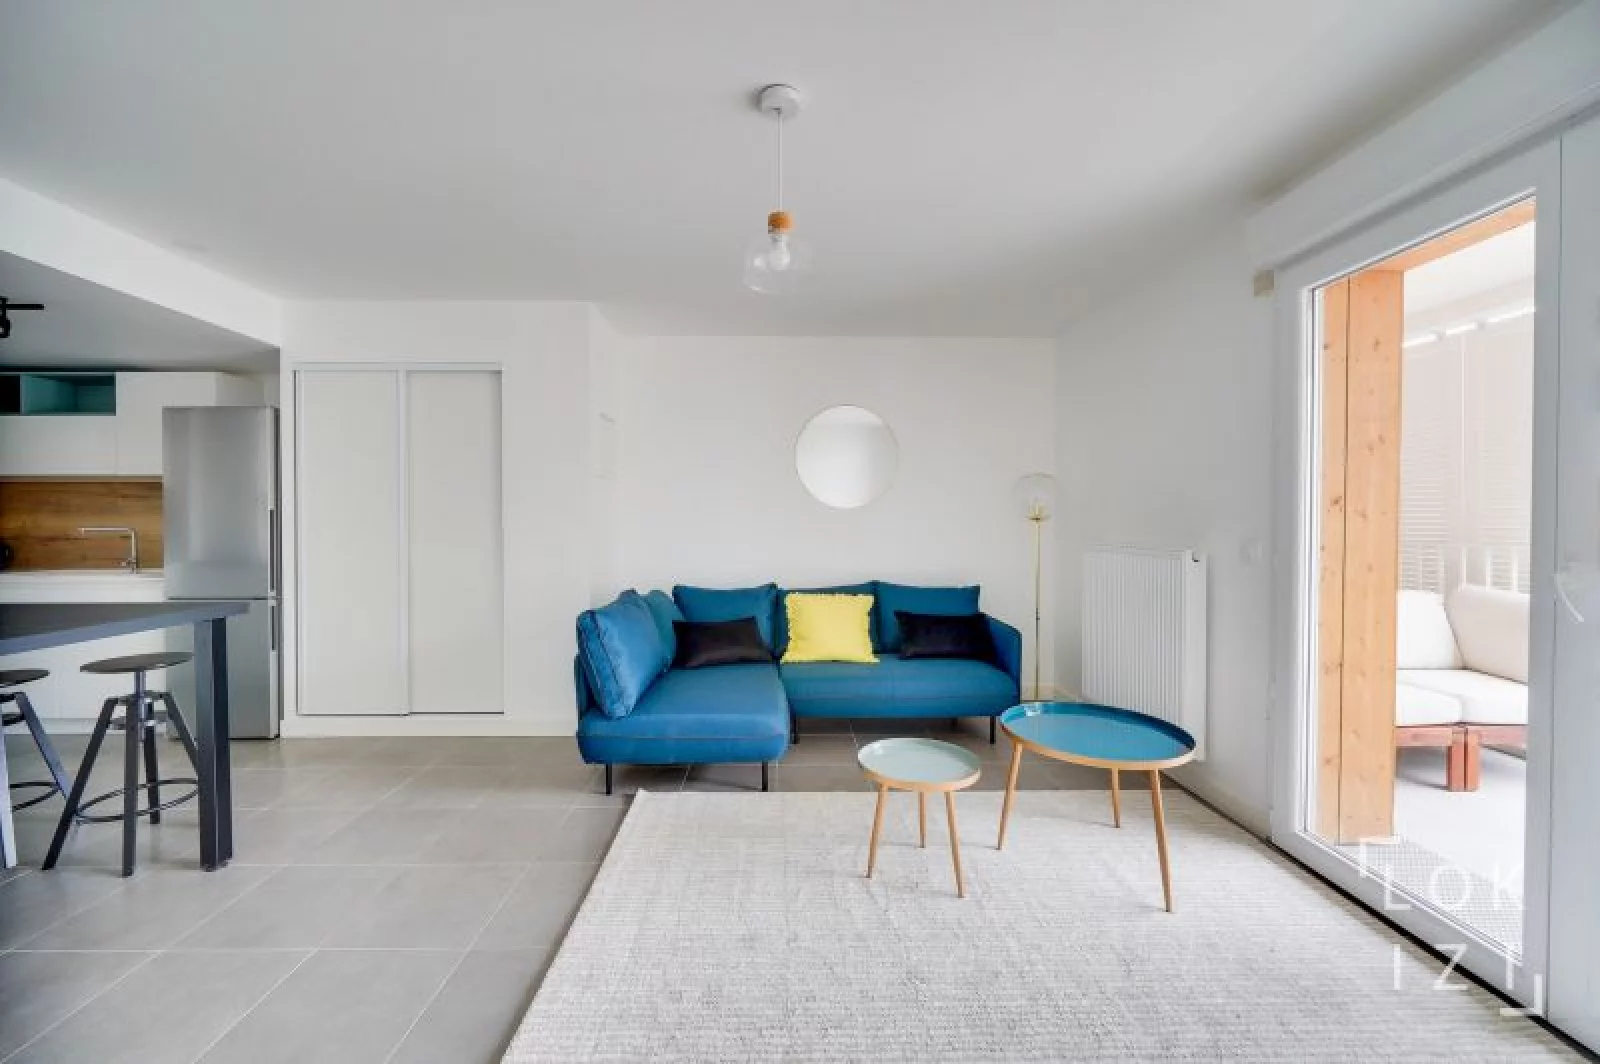 Location appartement meublé 4 pièces 85m²  (Bordeaux - Bacalan)